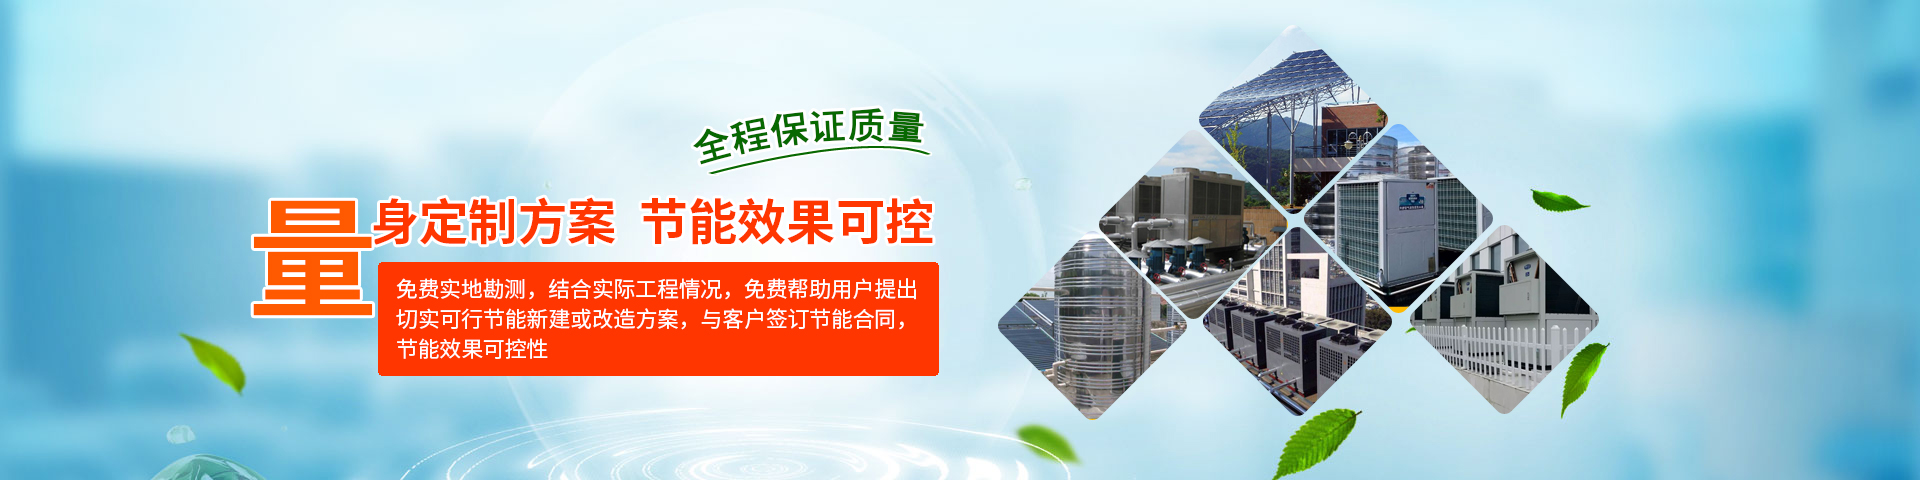 南京華凱機電設備安裝有限公司公司介紹